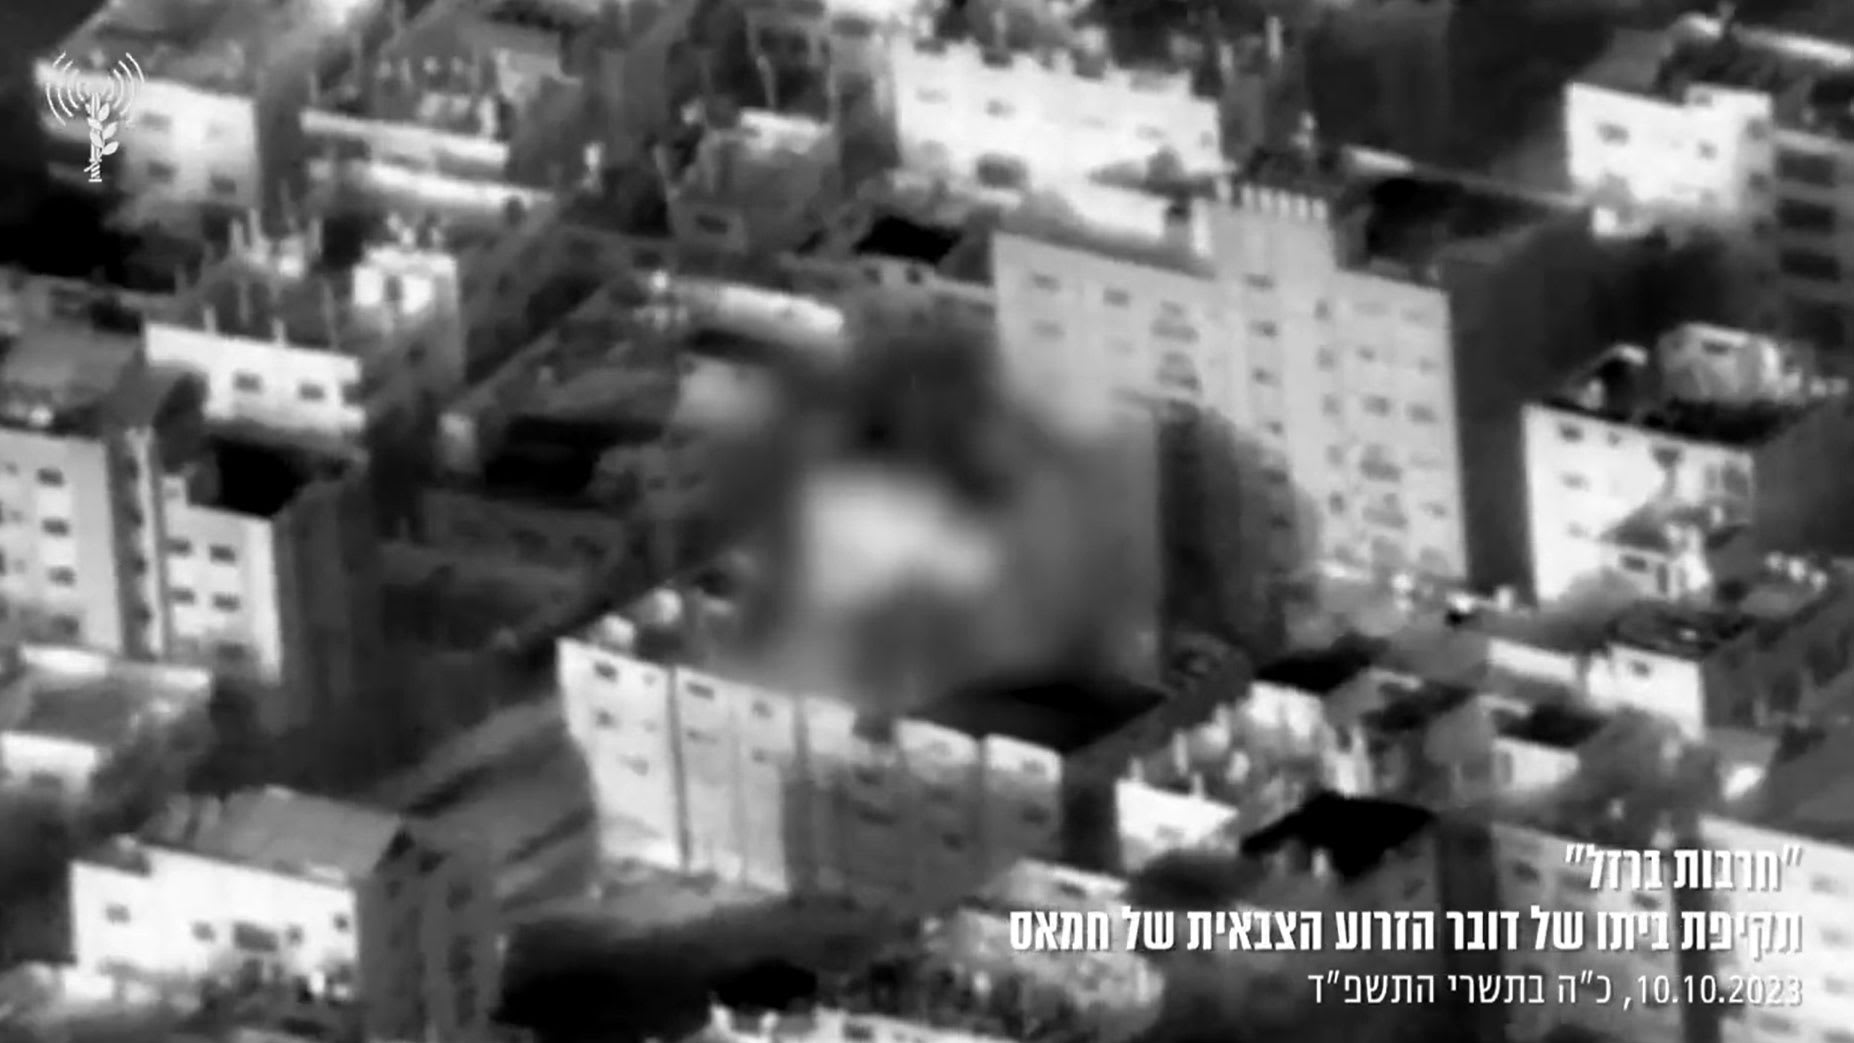 إسرائيل تنشر فيديو لحظة استهداف منزل متحدث باسم الجناح العسكري بحماس